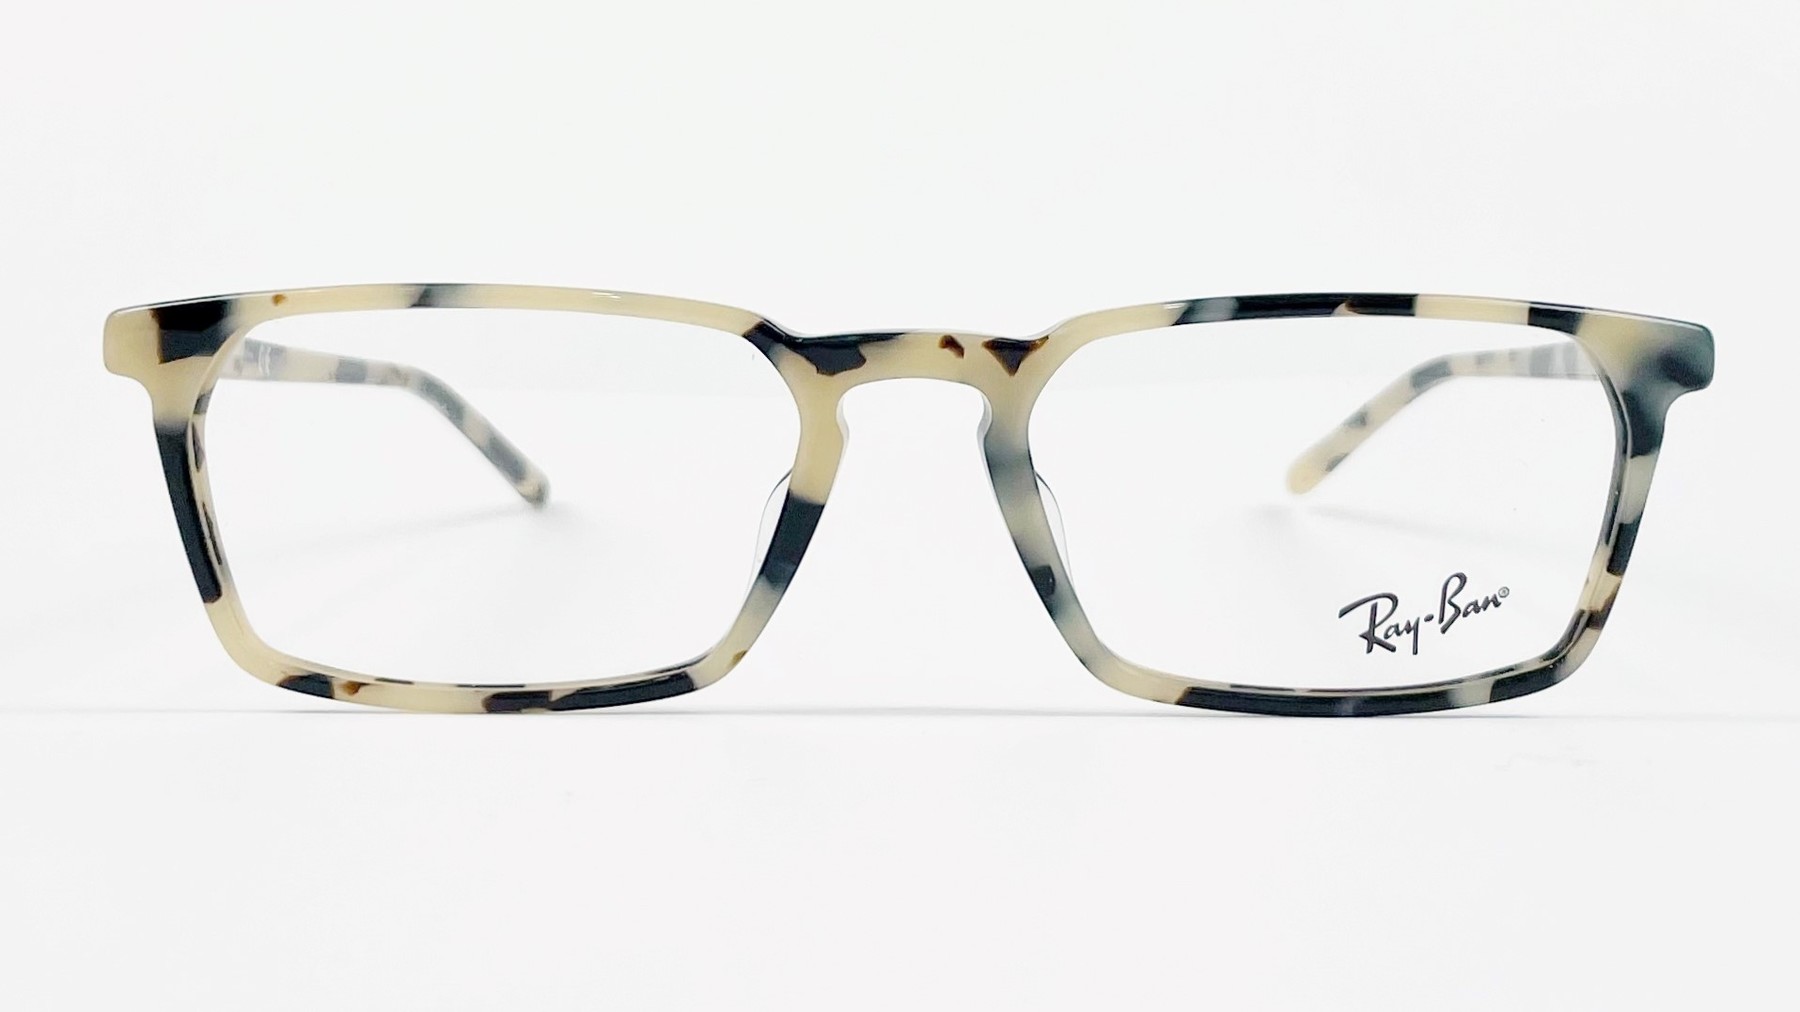 RayBan RB532F 5878, Korean glasses, sunglasses, eyeglasses, glasses